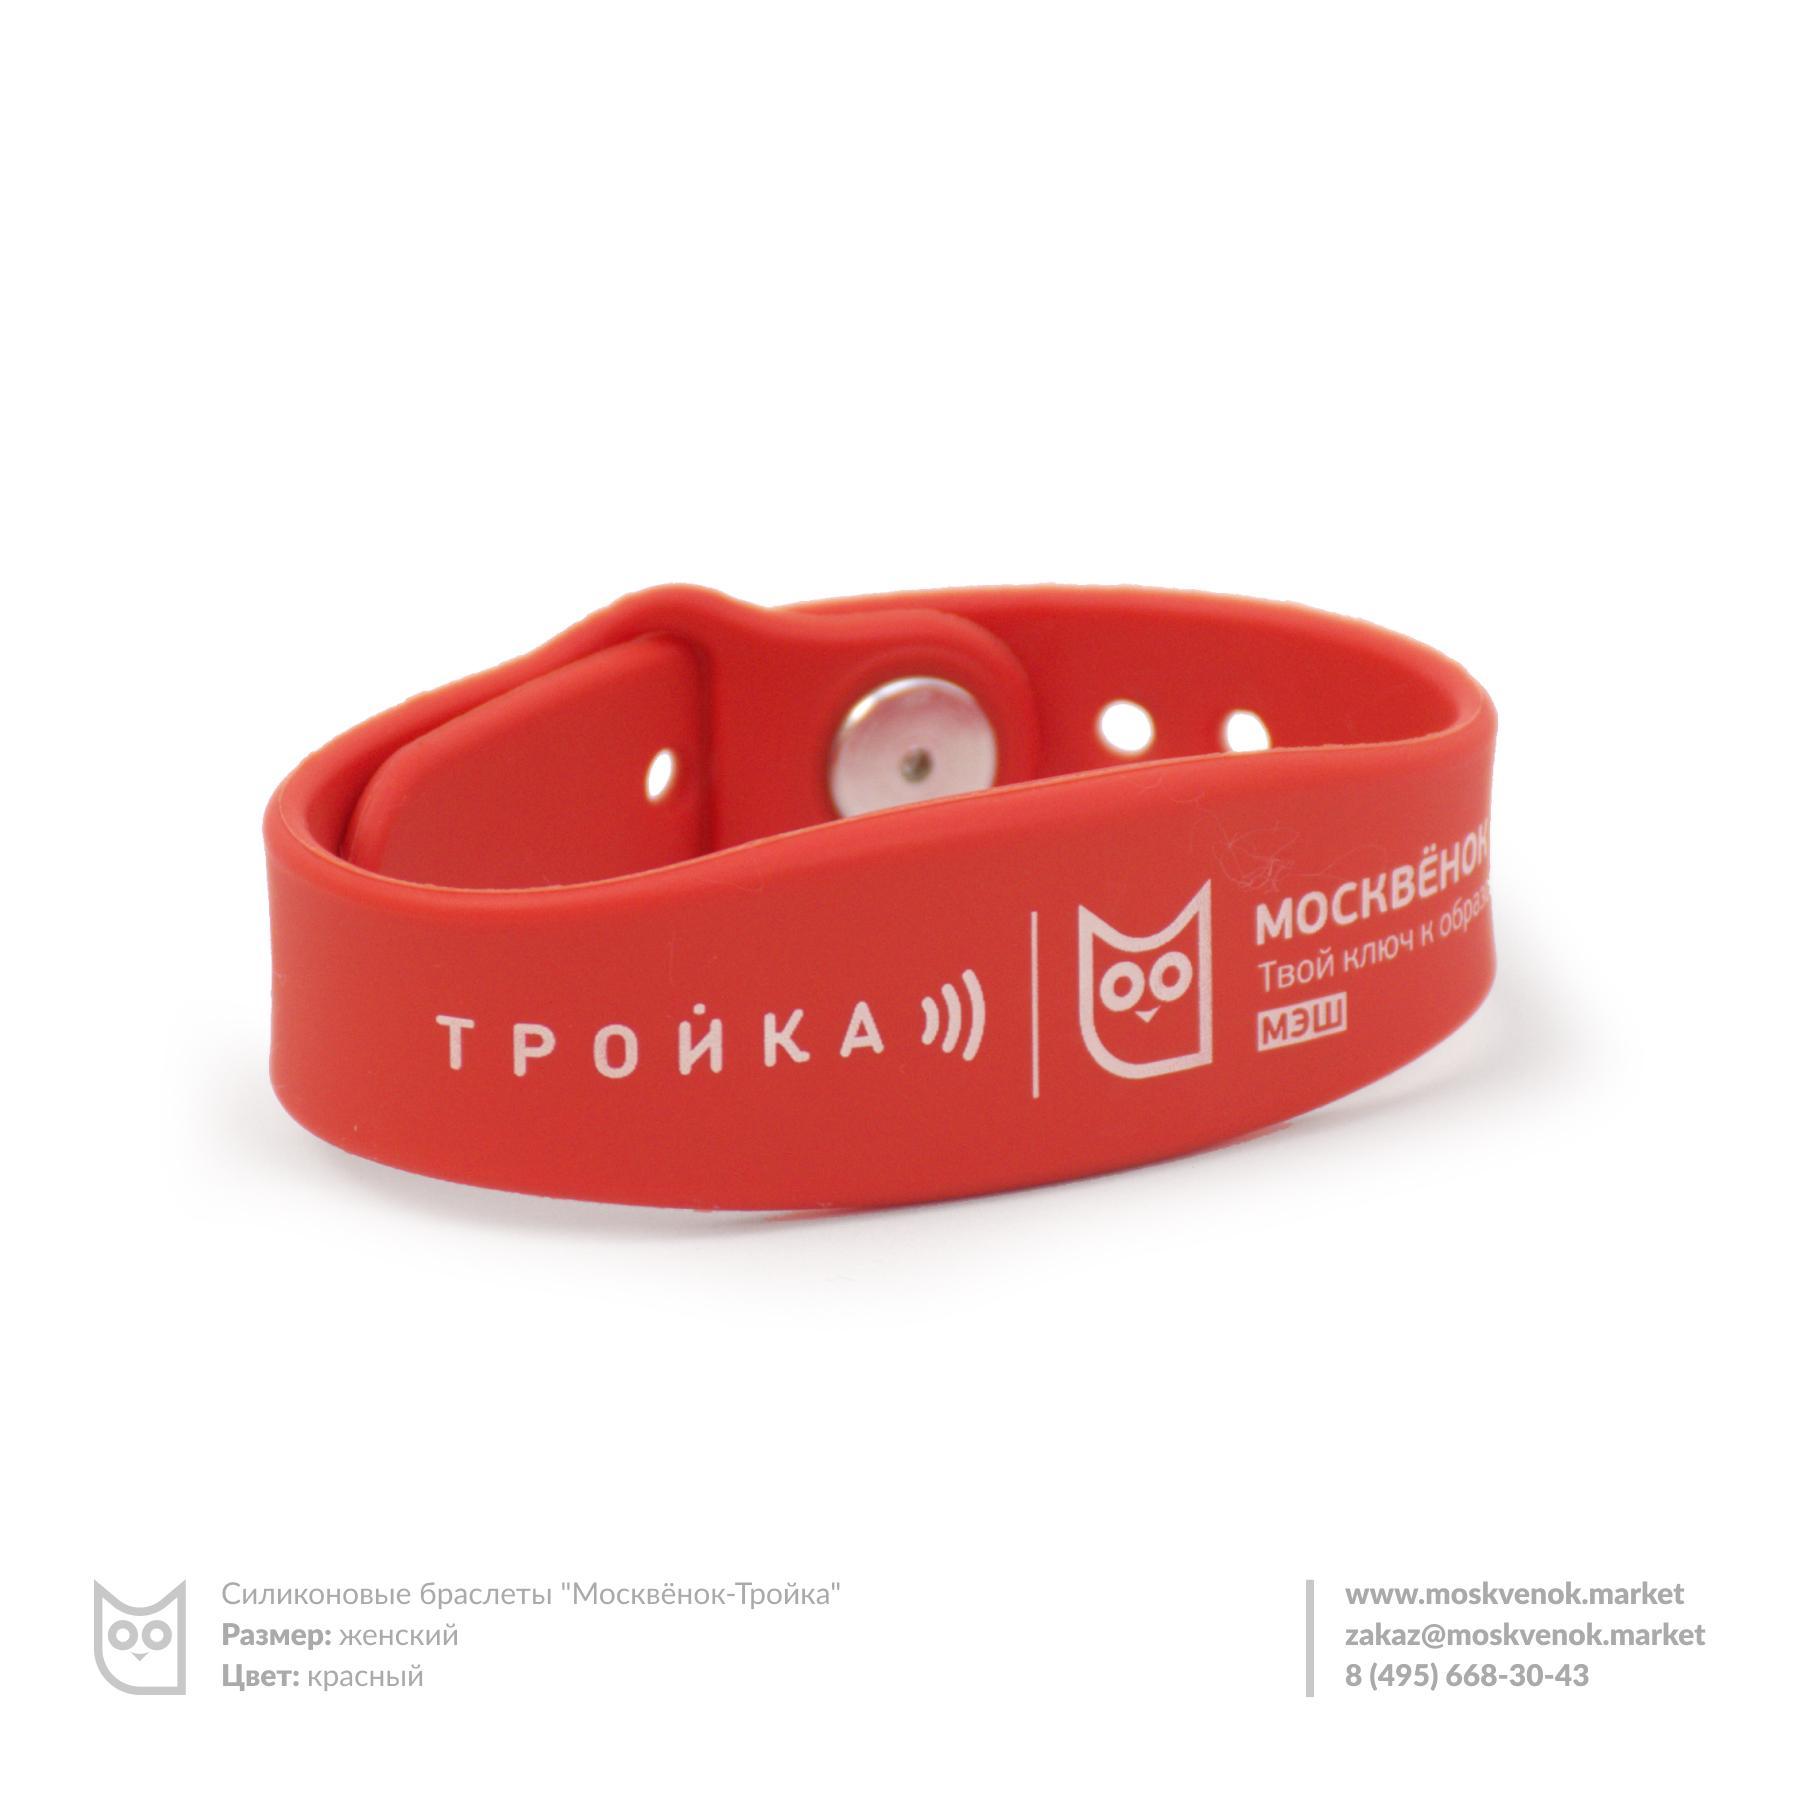 Силиконовые браслеты «Москвёнок-Тройка» - теперь и с оплатой проезда | moskvenok.market